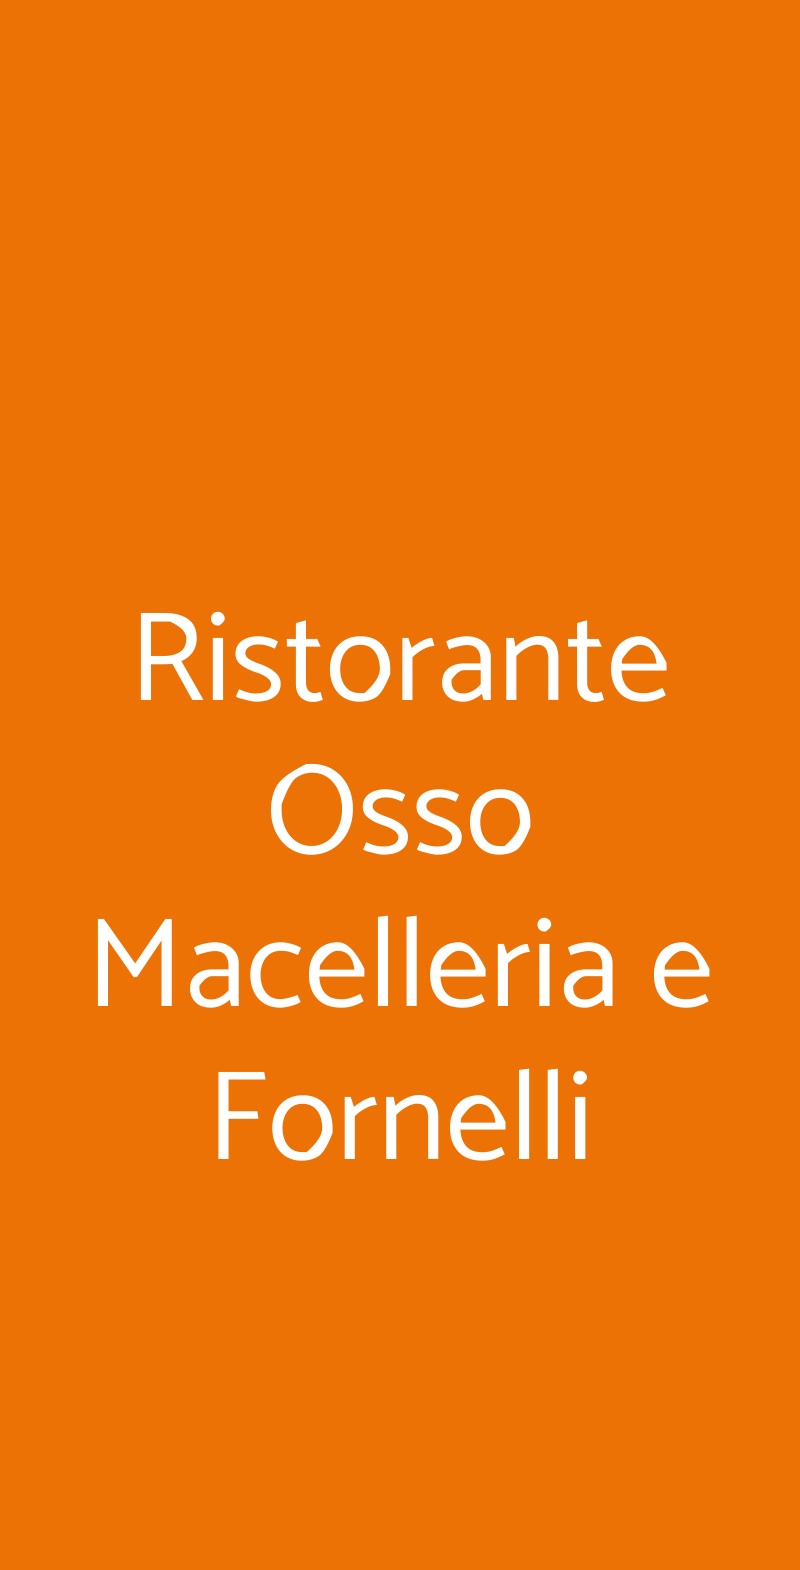 Ristorante Osso Macelleria e Fornelli Milano menù 1 pagina